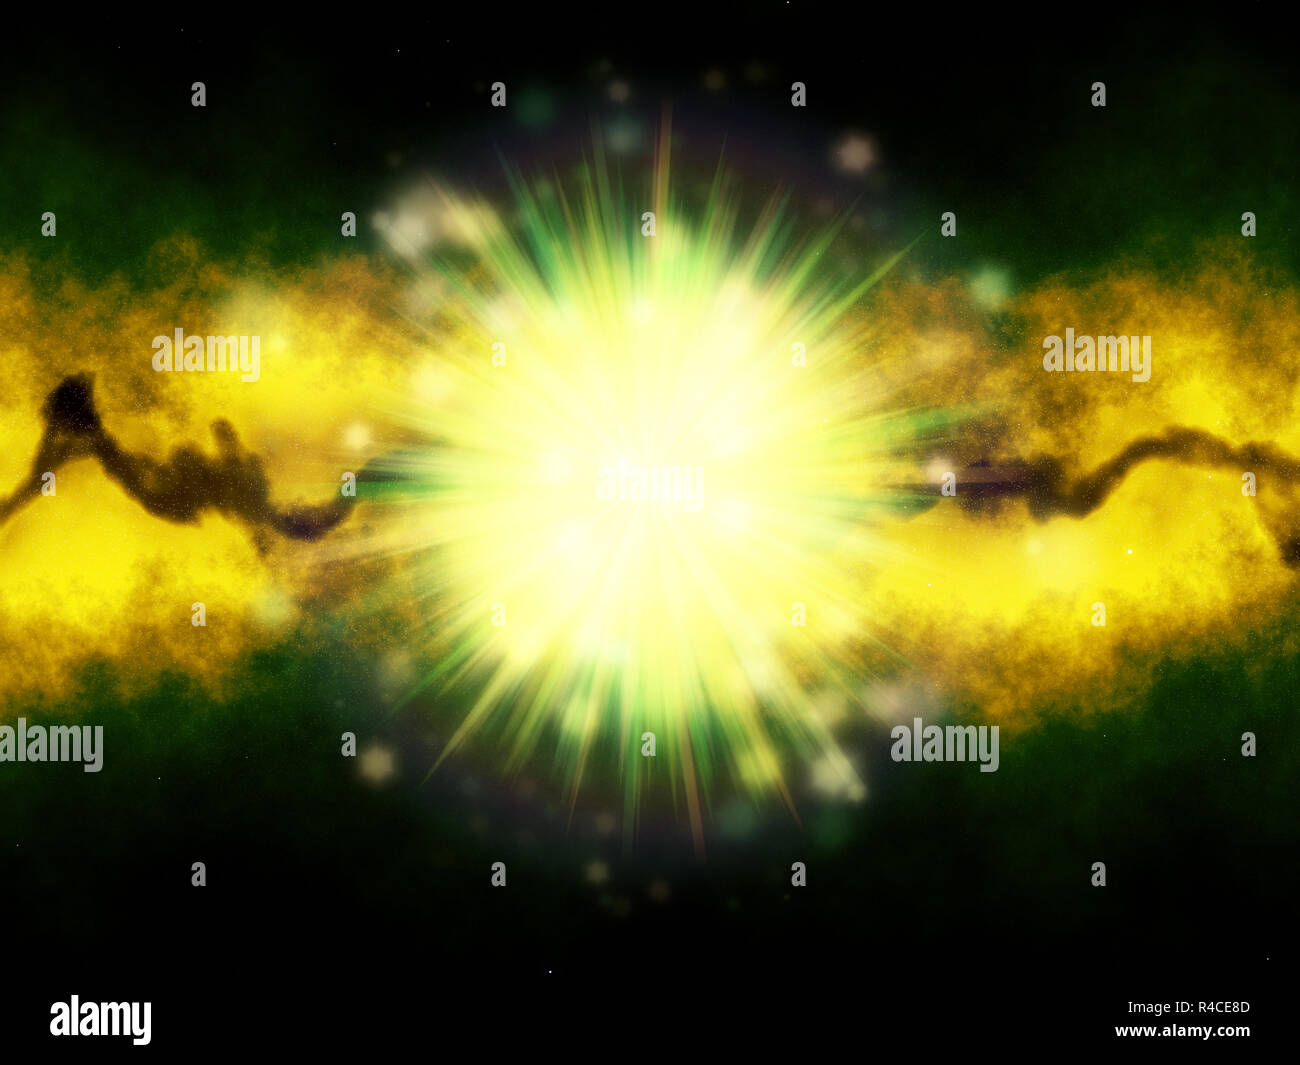 Green burst Abbildung über eine grüne und gelbe Galaxy. Stockfoto